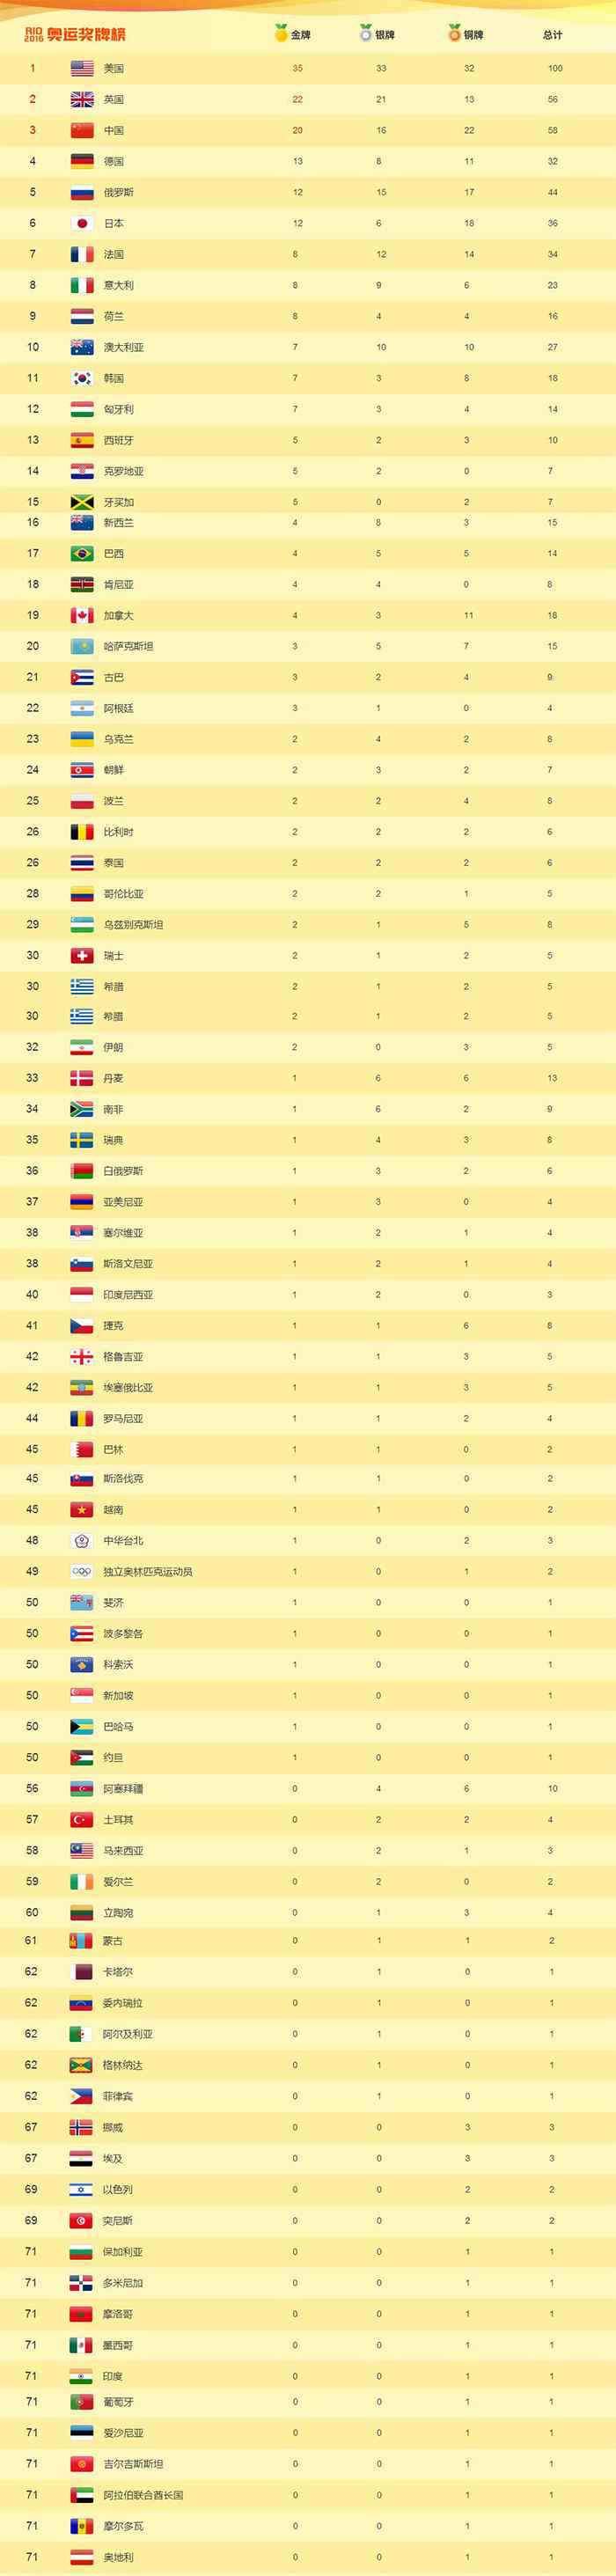 里约奥运会金牌榜 2016年奥运会中国金牌数 中国历届奥运会金牌榜